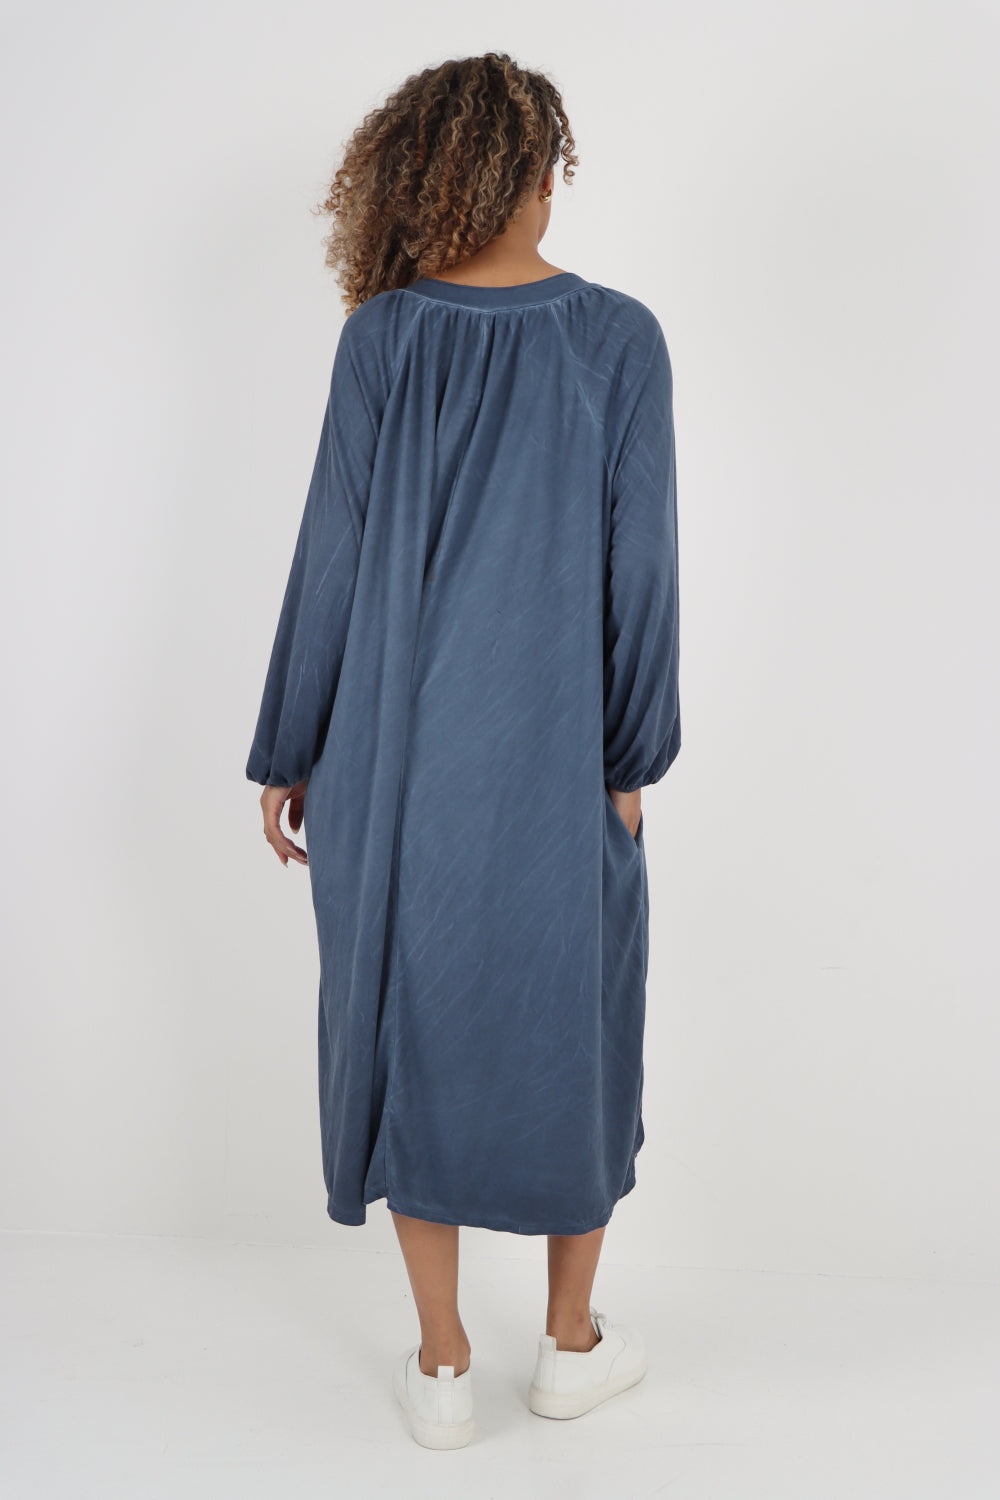 Italian Plain Long Sleeve Casual Midi Dress